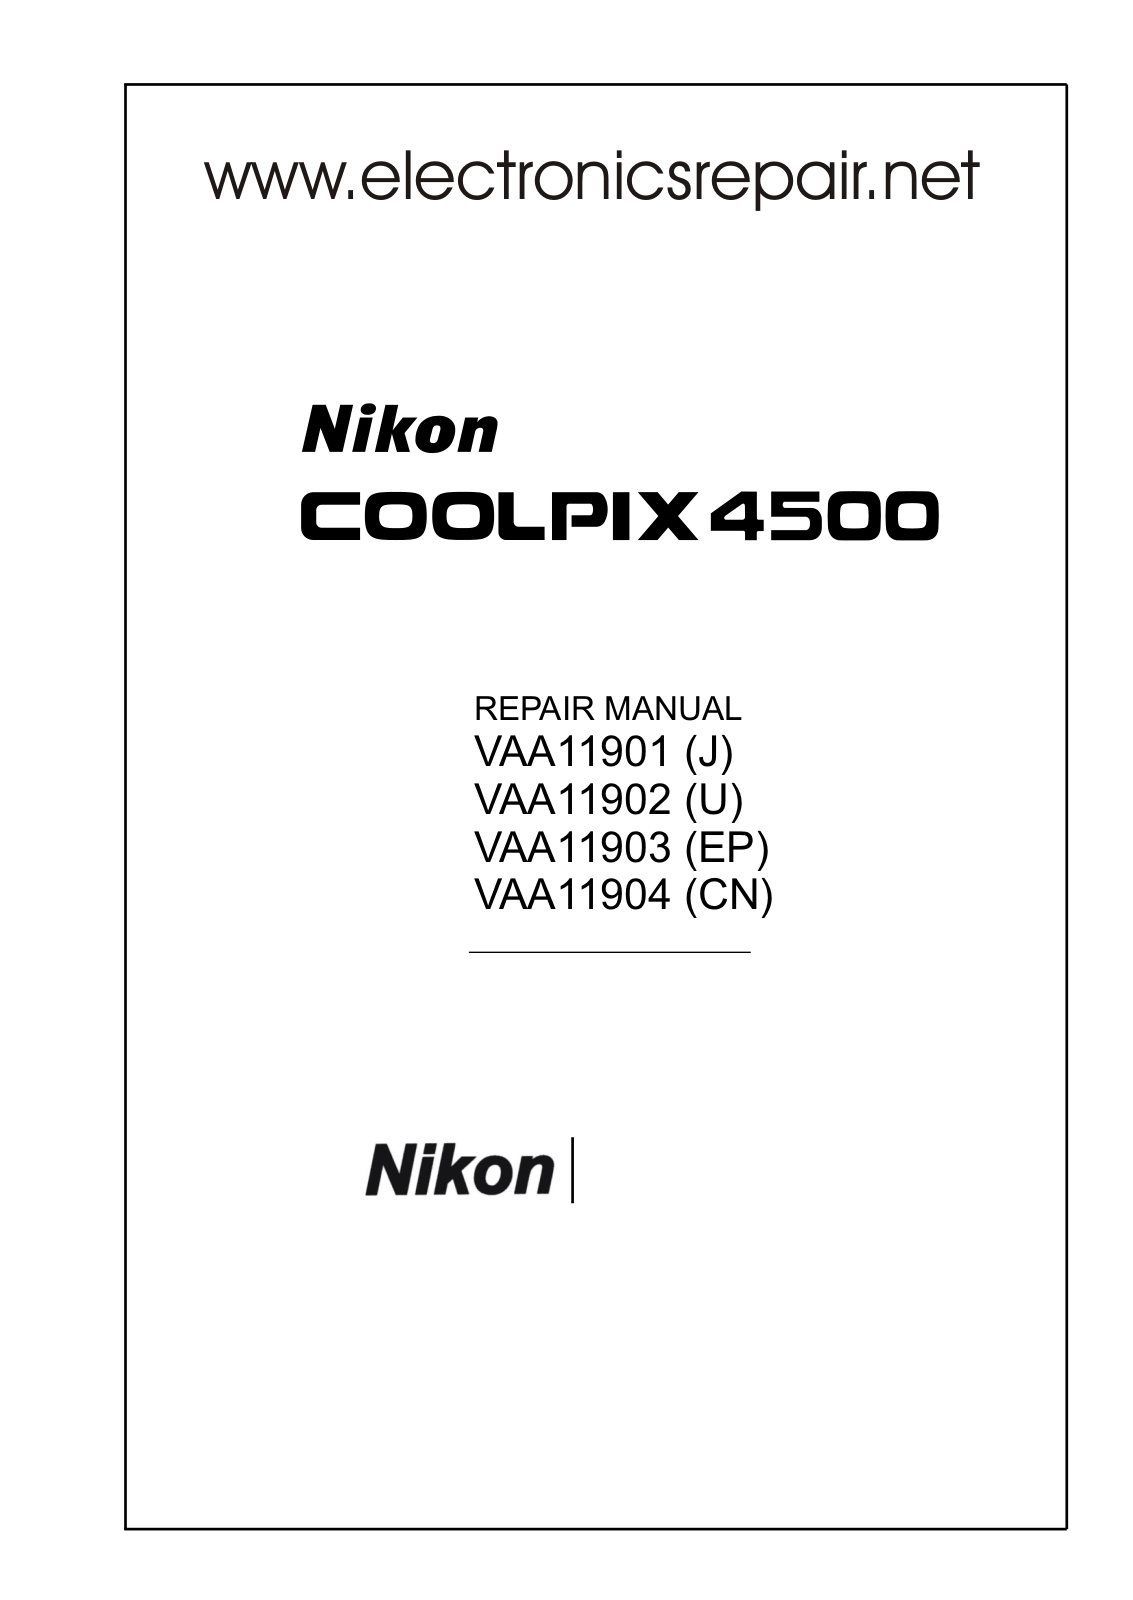 Nikon Coolpix 4500 Repair Manual